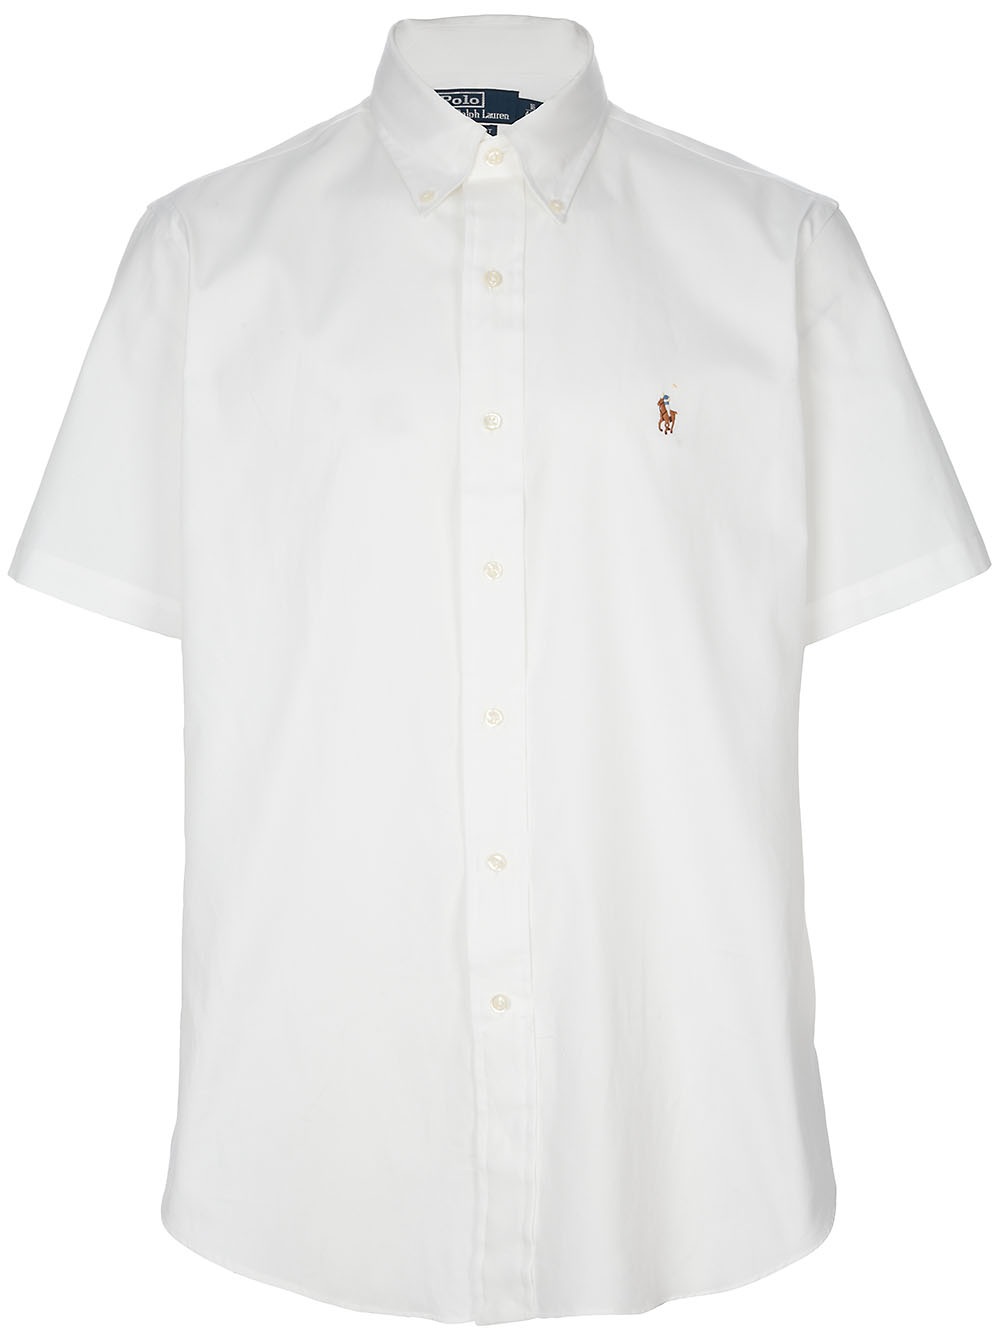 Lyst - Polo Ralph Lauren Short Sleeved Shirt in White for Men